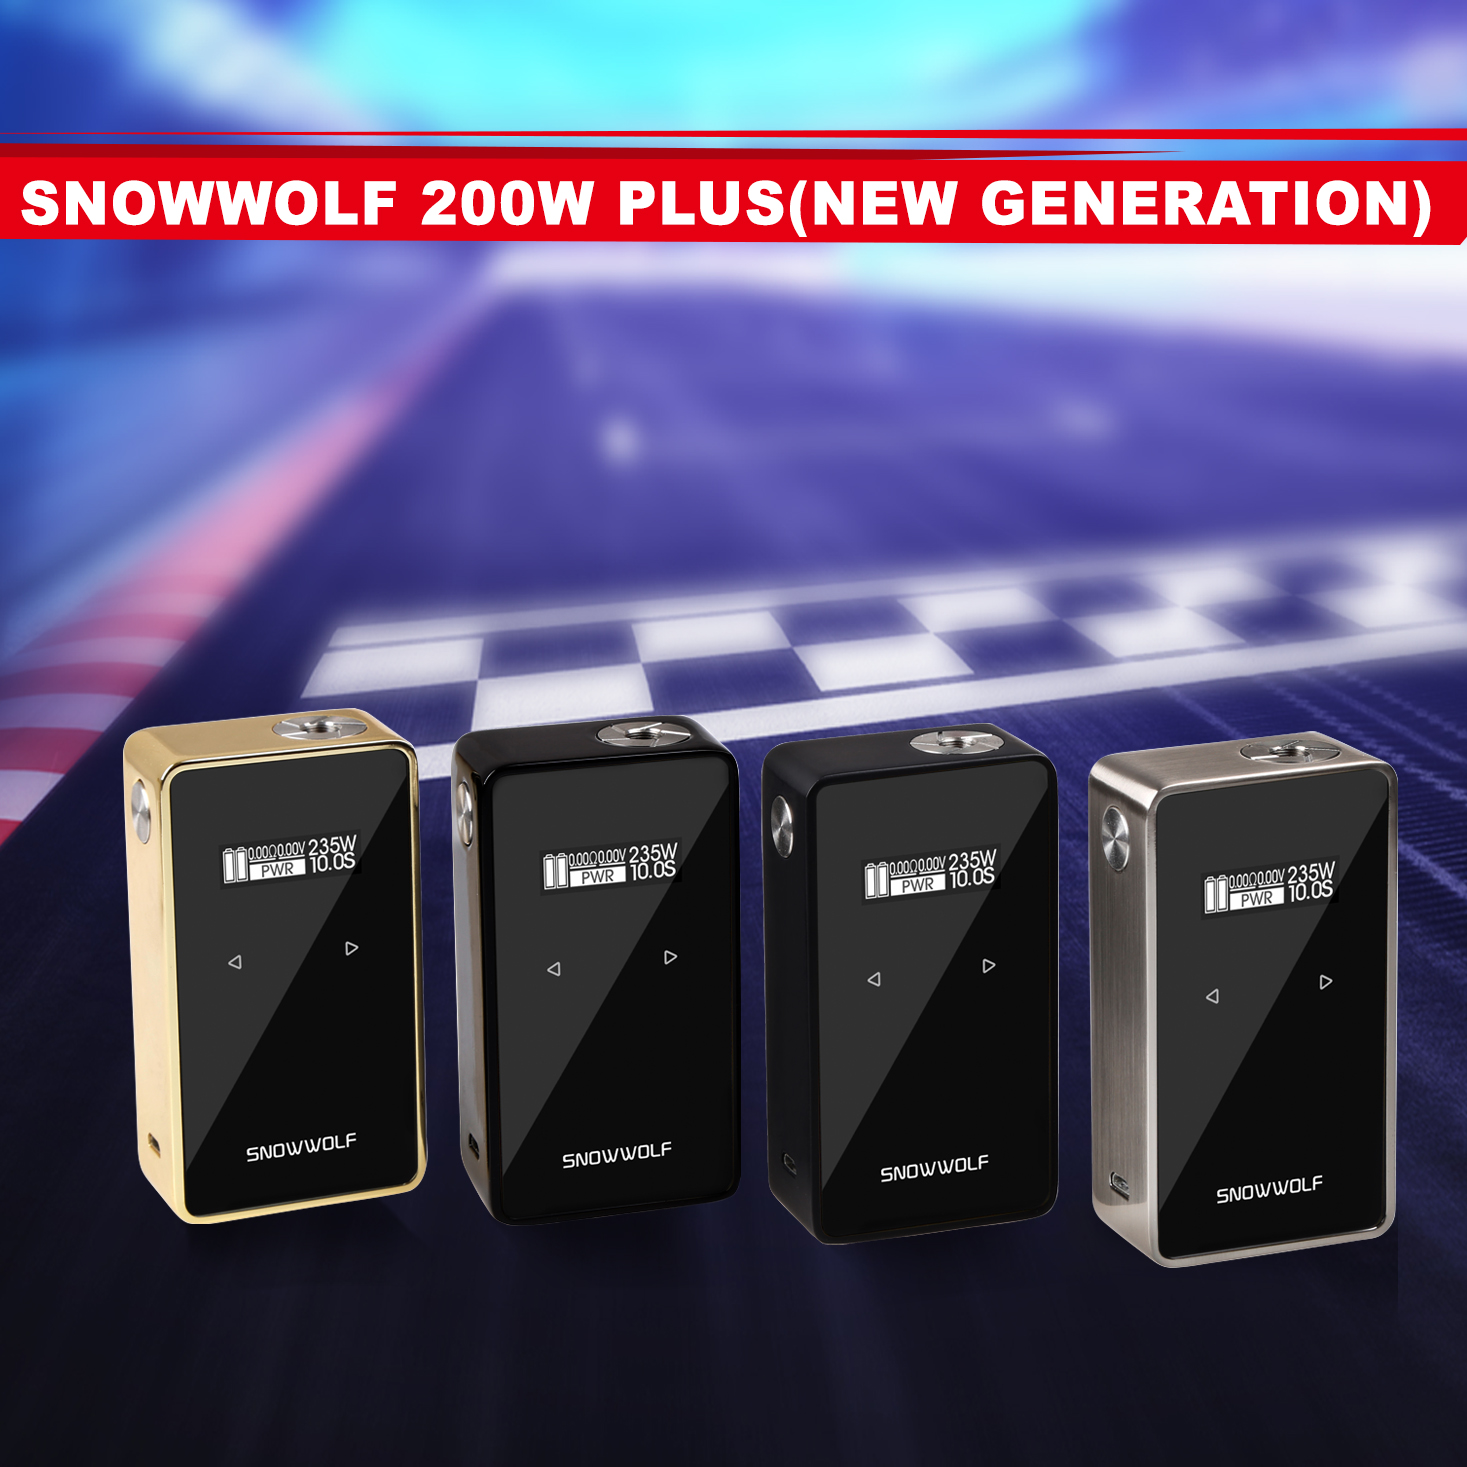 Snowwolf 200W Plus